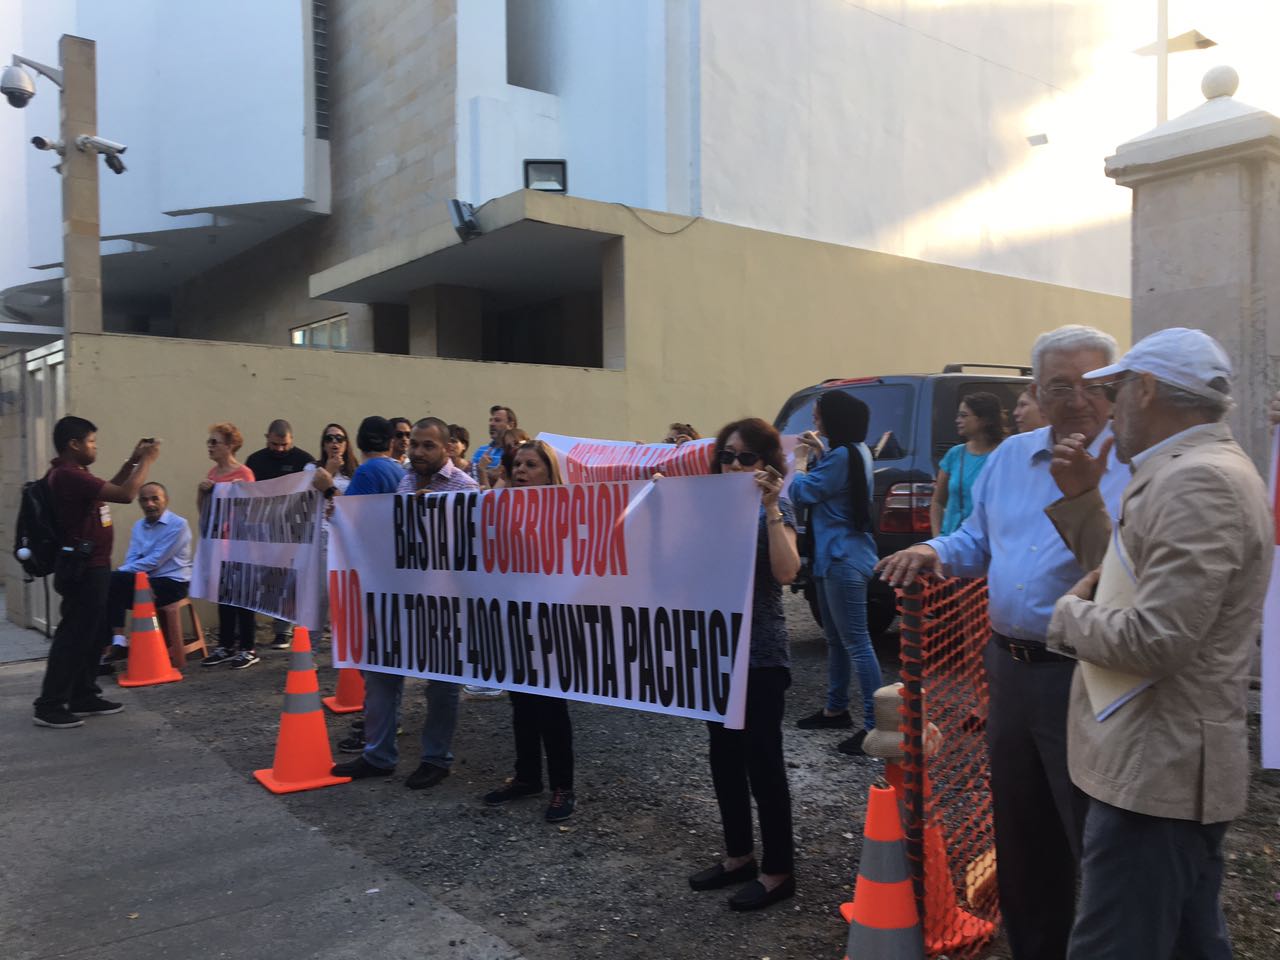 Manifestantes ocuparon las aceras del conjunto residencial Pacific Point el viernes, 17 de marzo, siendo atendidos por el corregidor